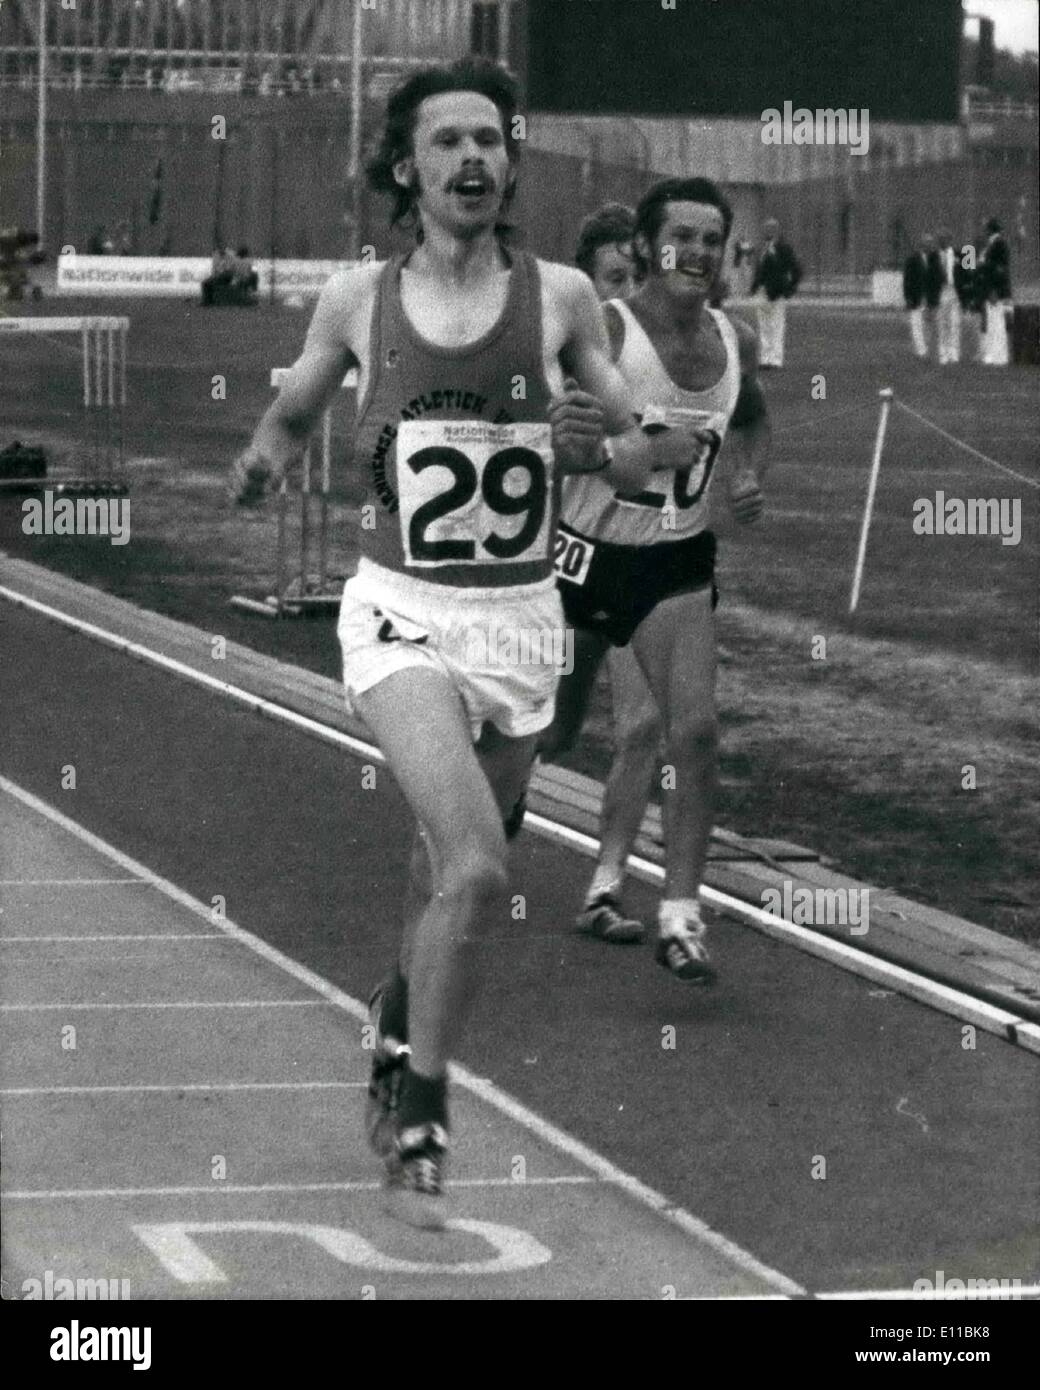 08 août 1976 - Dutchman vole la vedette à l'échelle nationale A.A.A. Championnats d'athlétisme à Crystal Palace : un coureur néerlandais, qui n'était pas sélectionné pour les Jeux olympiques parce qu'il a été blessé au cours des 10 derniers mois, a souligné le jour de l'ouverture de l'ensemble du pays aux championnats AAA à Crystal Palace, hier, lorsqu'il a gagné le 10 000 mètres dans un cadre raffiné. Gerard Tebroke, 26, un étudiant de Arnham, a remporté l'épreuve en 28min. 3,95 s. Photo montre. Gereard Tebroke Dutchman tours certains concurrents comme il a facilement remporte le 10 000 mètres. Banque D'Images